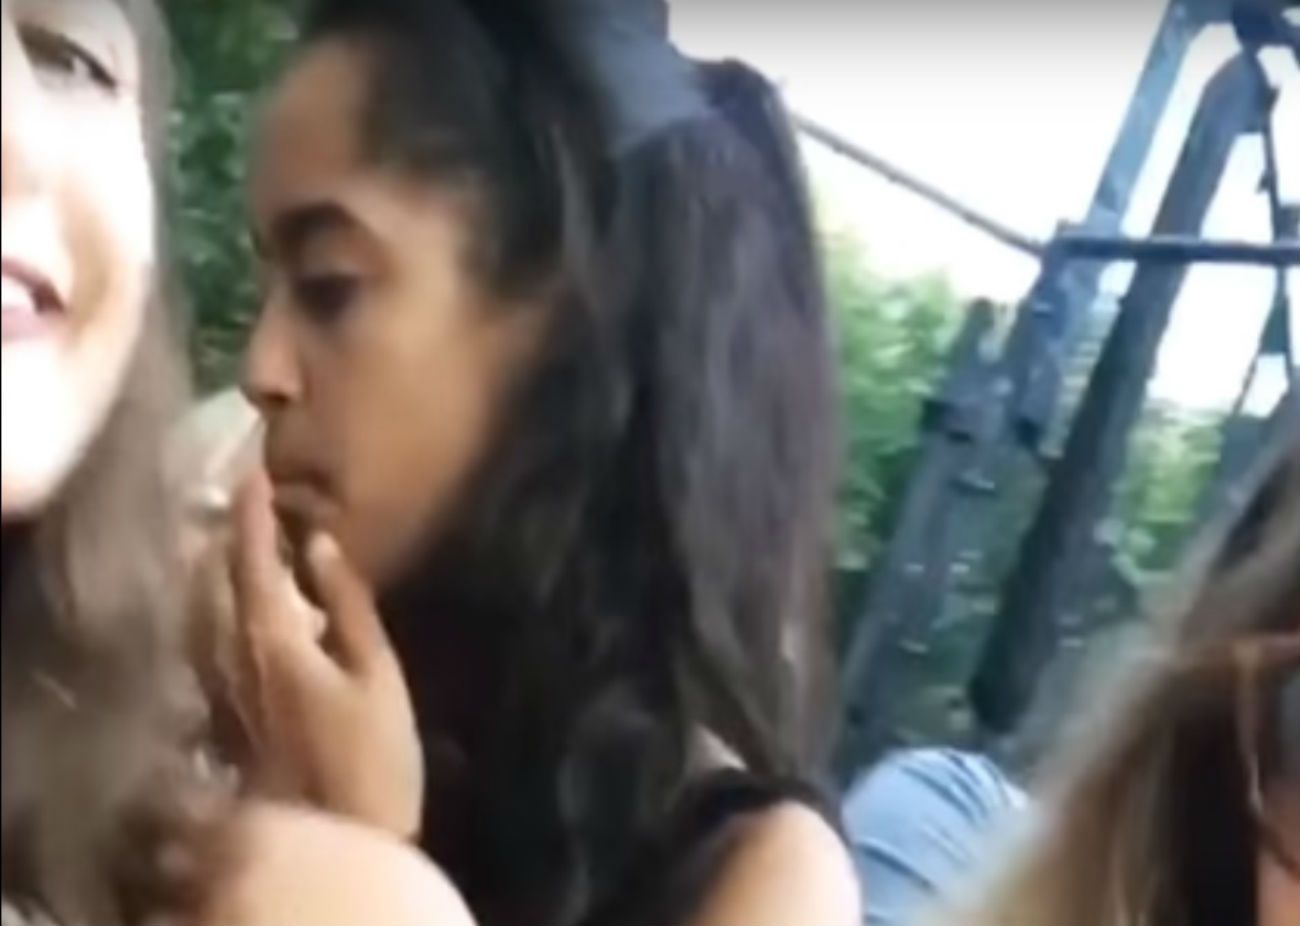 Polémica por una imagen de la hija de Obama fumando un supuesto porro